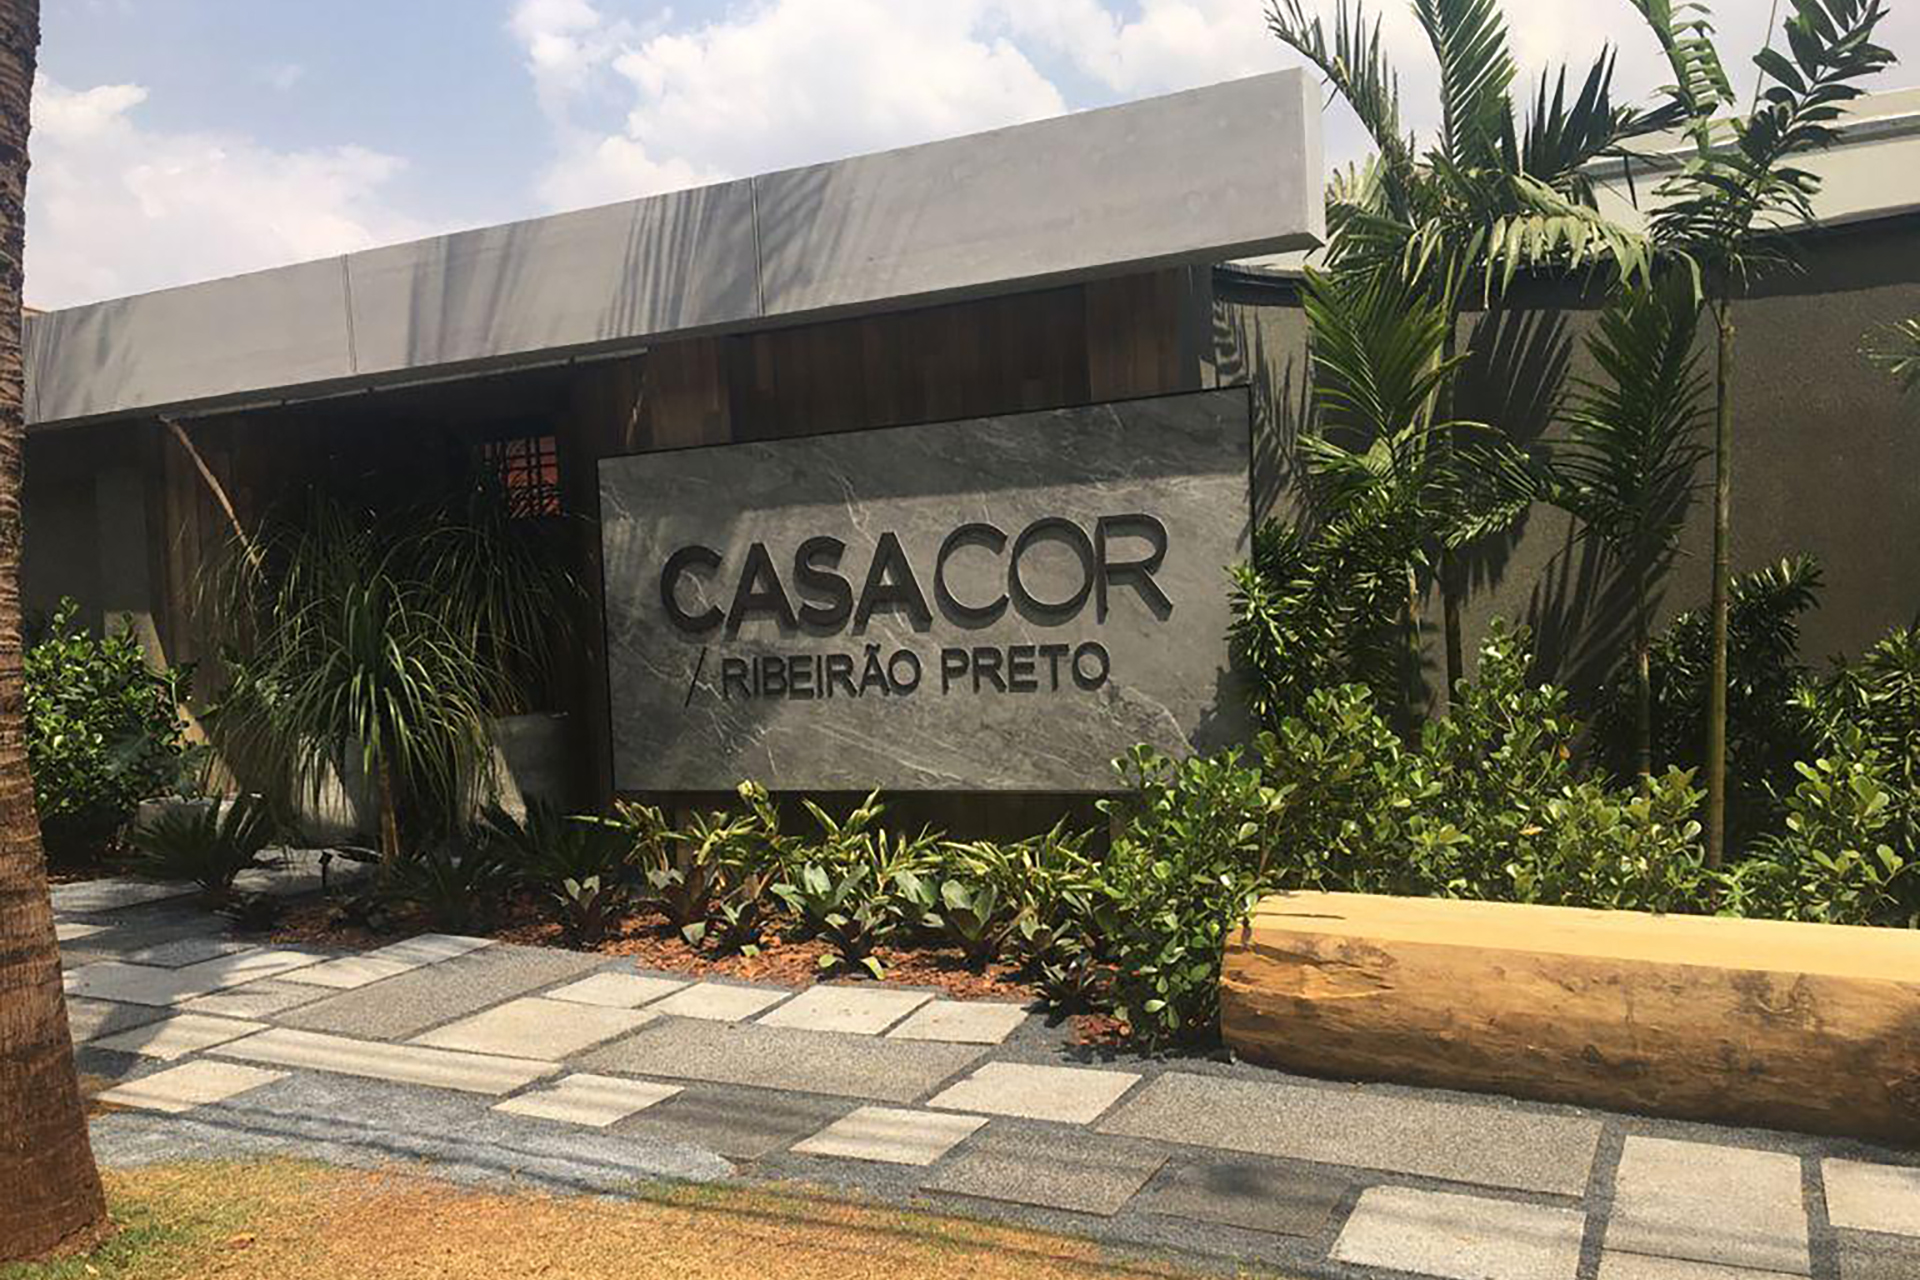 CASACOR Ribeirão preto 2021